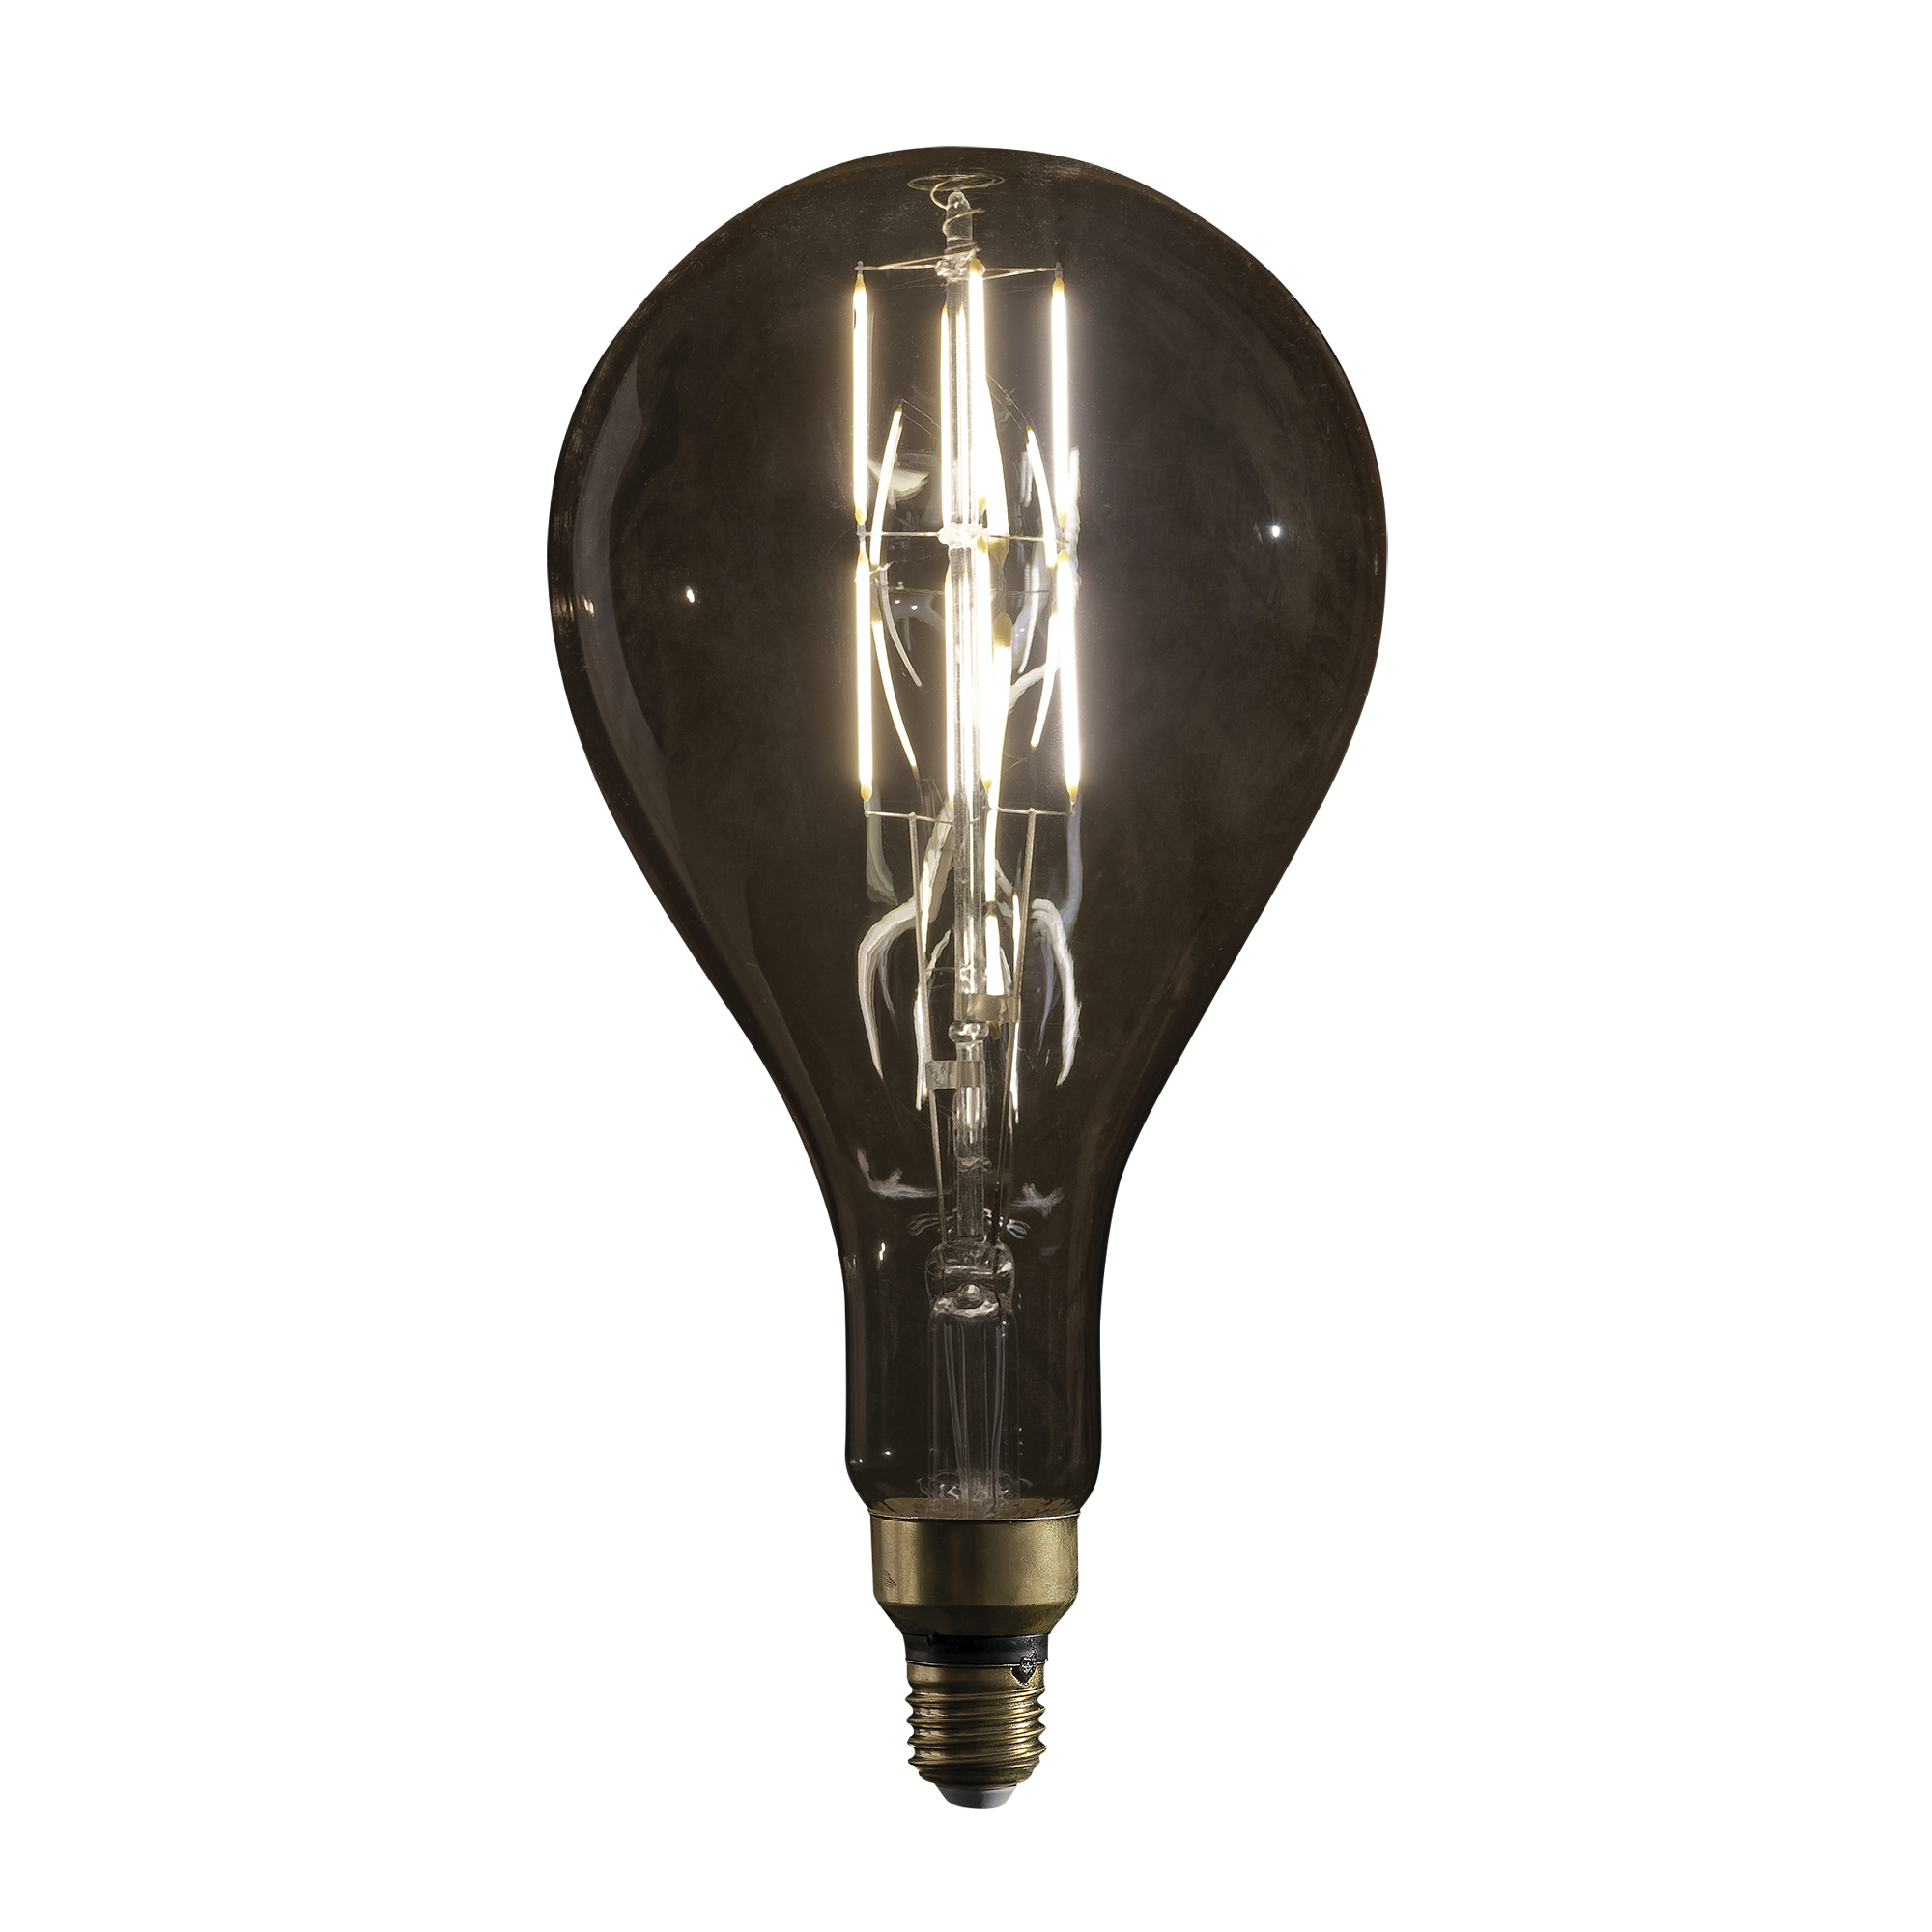 Showgear LED Filament Bulb PS52 6W - dimmbar